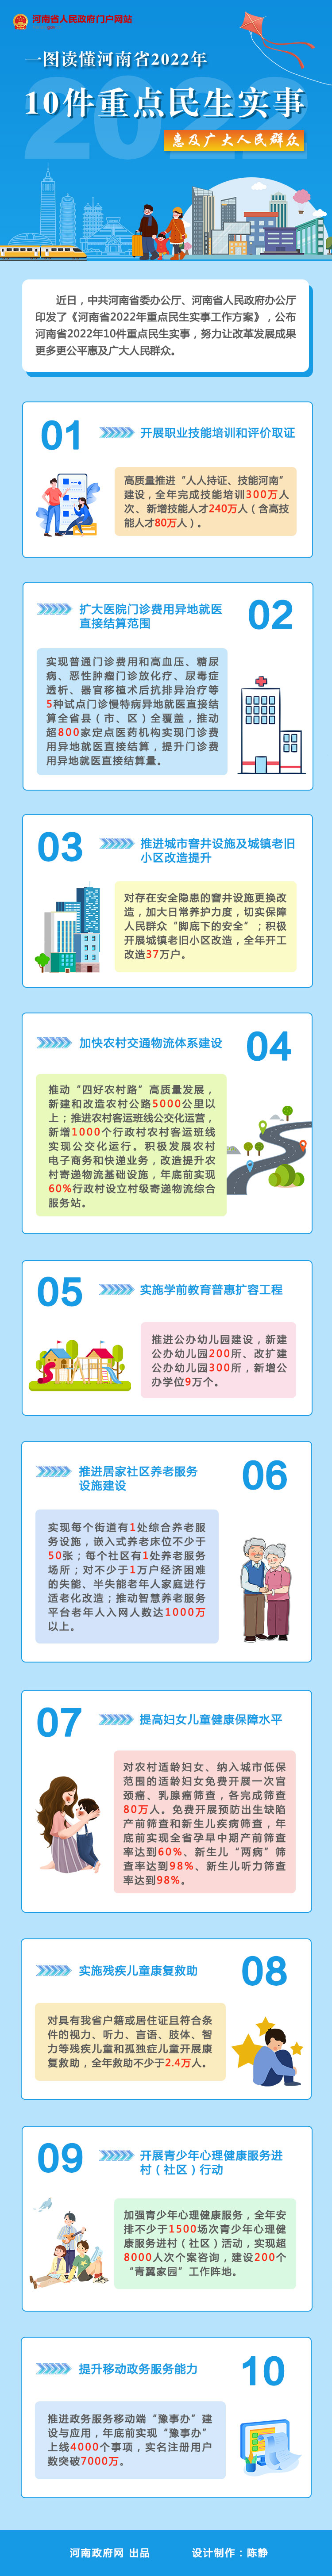 一图读懂 | 河南省2022年10件重点民生实事